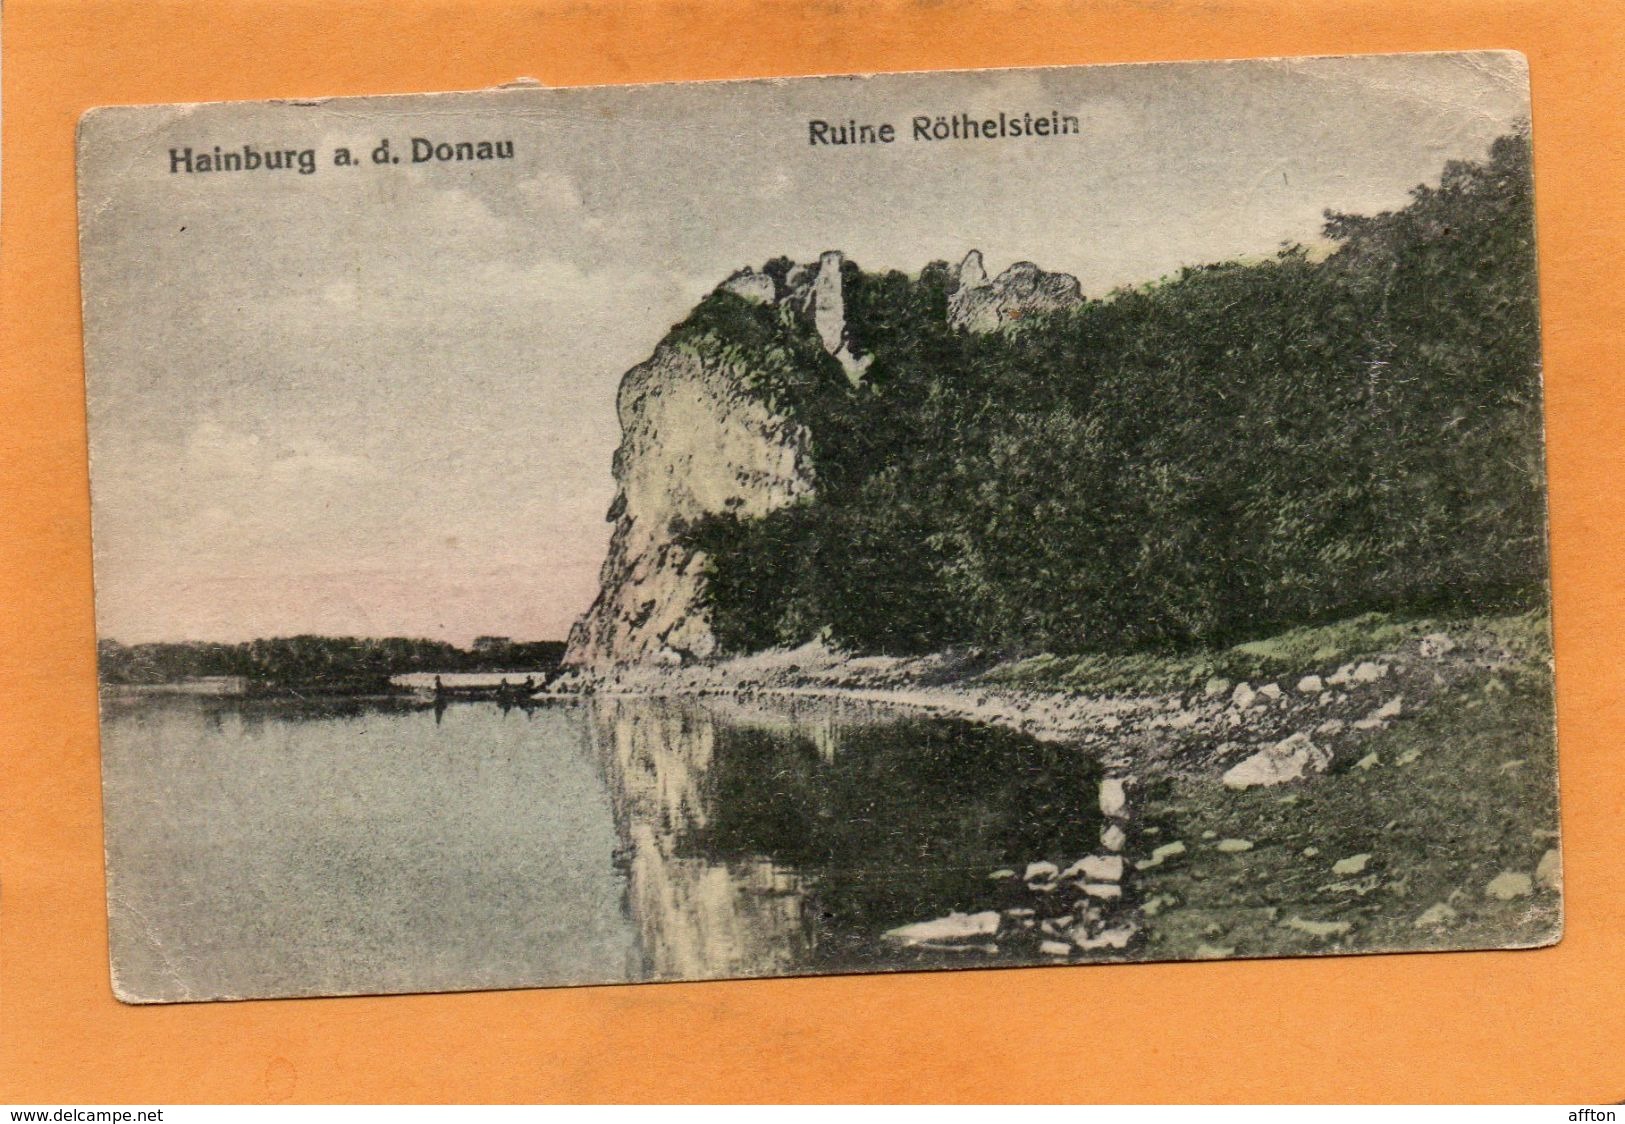 Hainburg A.d. Donau 1922 Postcard Postage Due - Hainburg